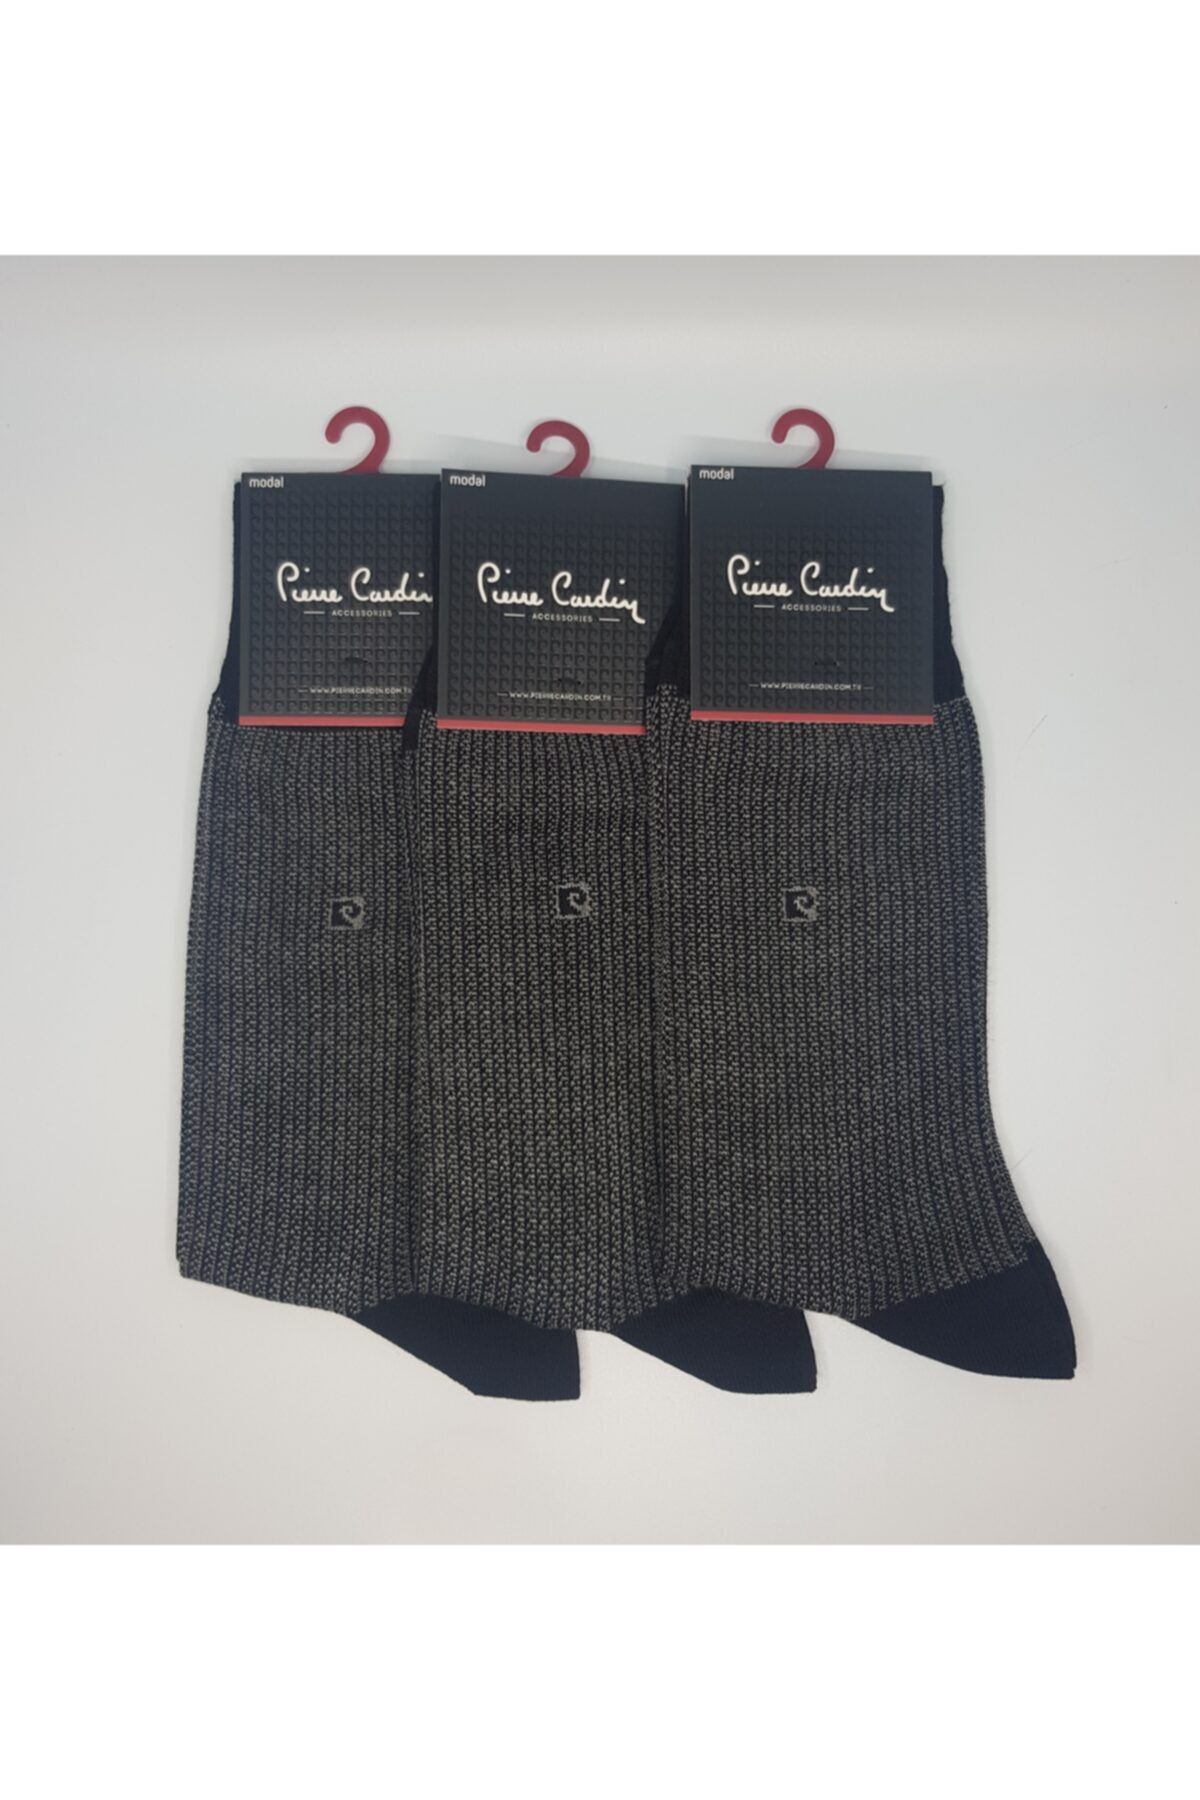 Pierre Cardin Erkek Siyah Desenli 3'lü Paket Modal Çorap 421 Fua Shop